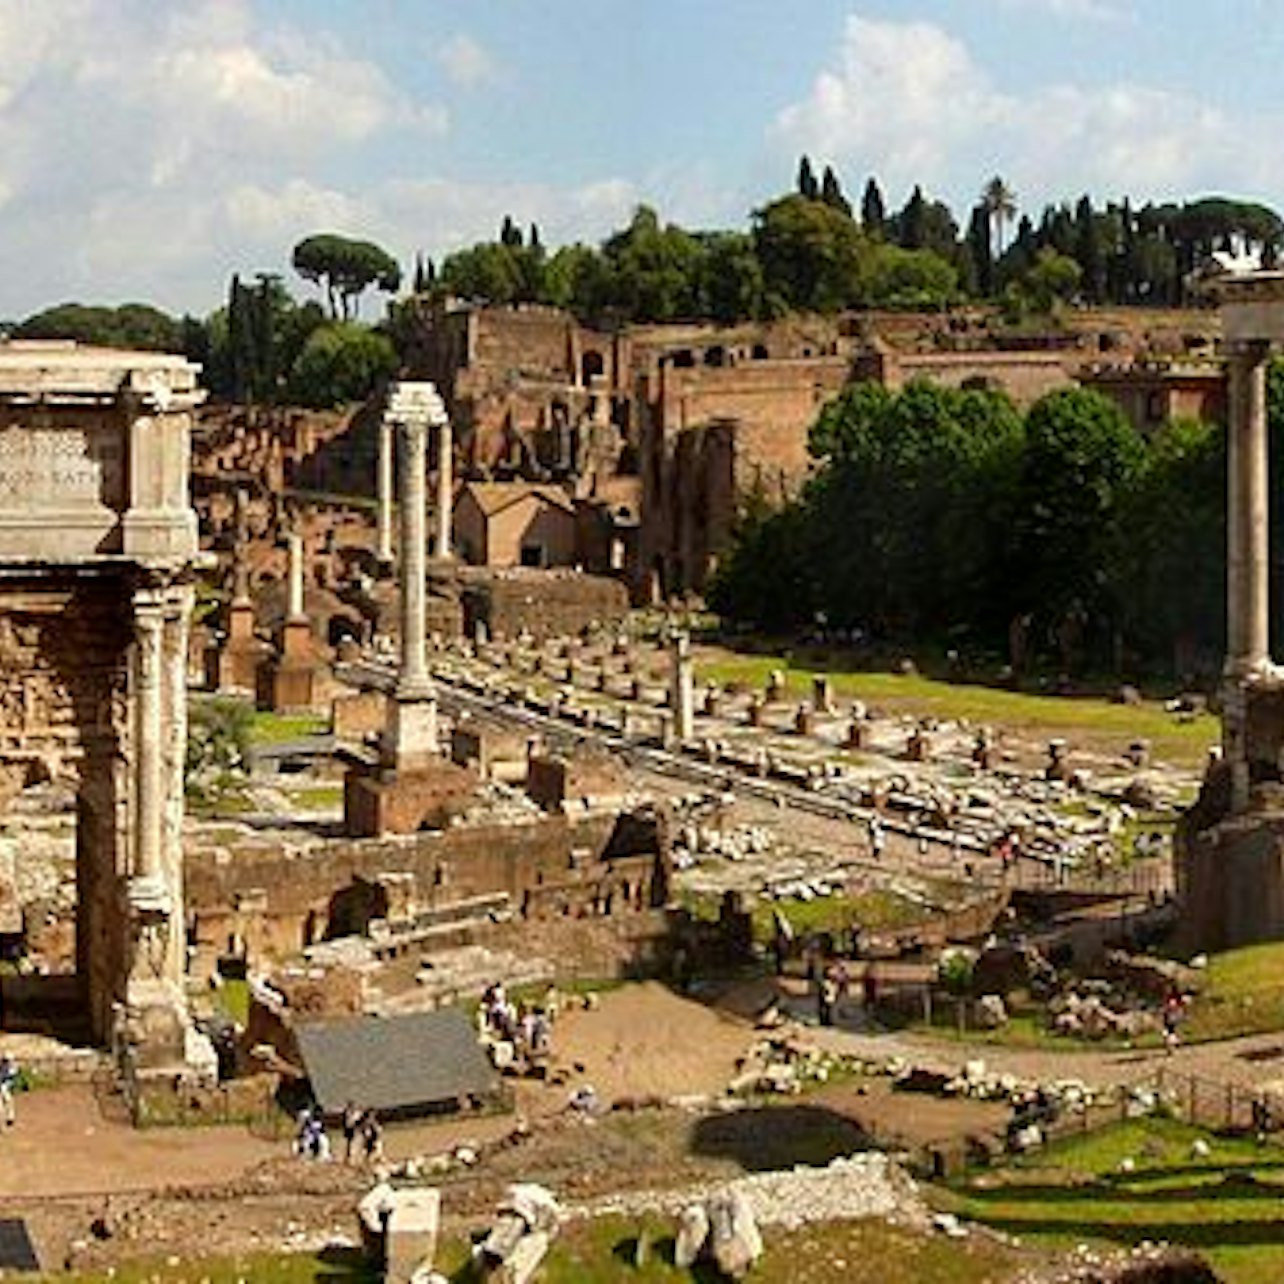 Colosseo, Foro Romano e Palatino: Accesso Prioritario - Alloggi in Roma